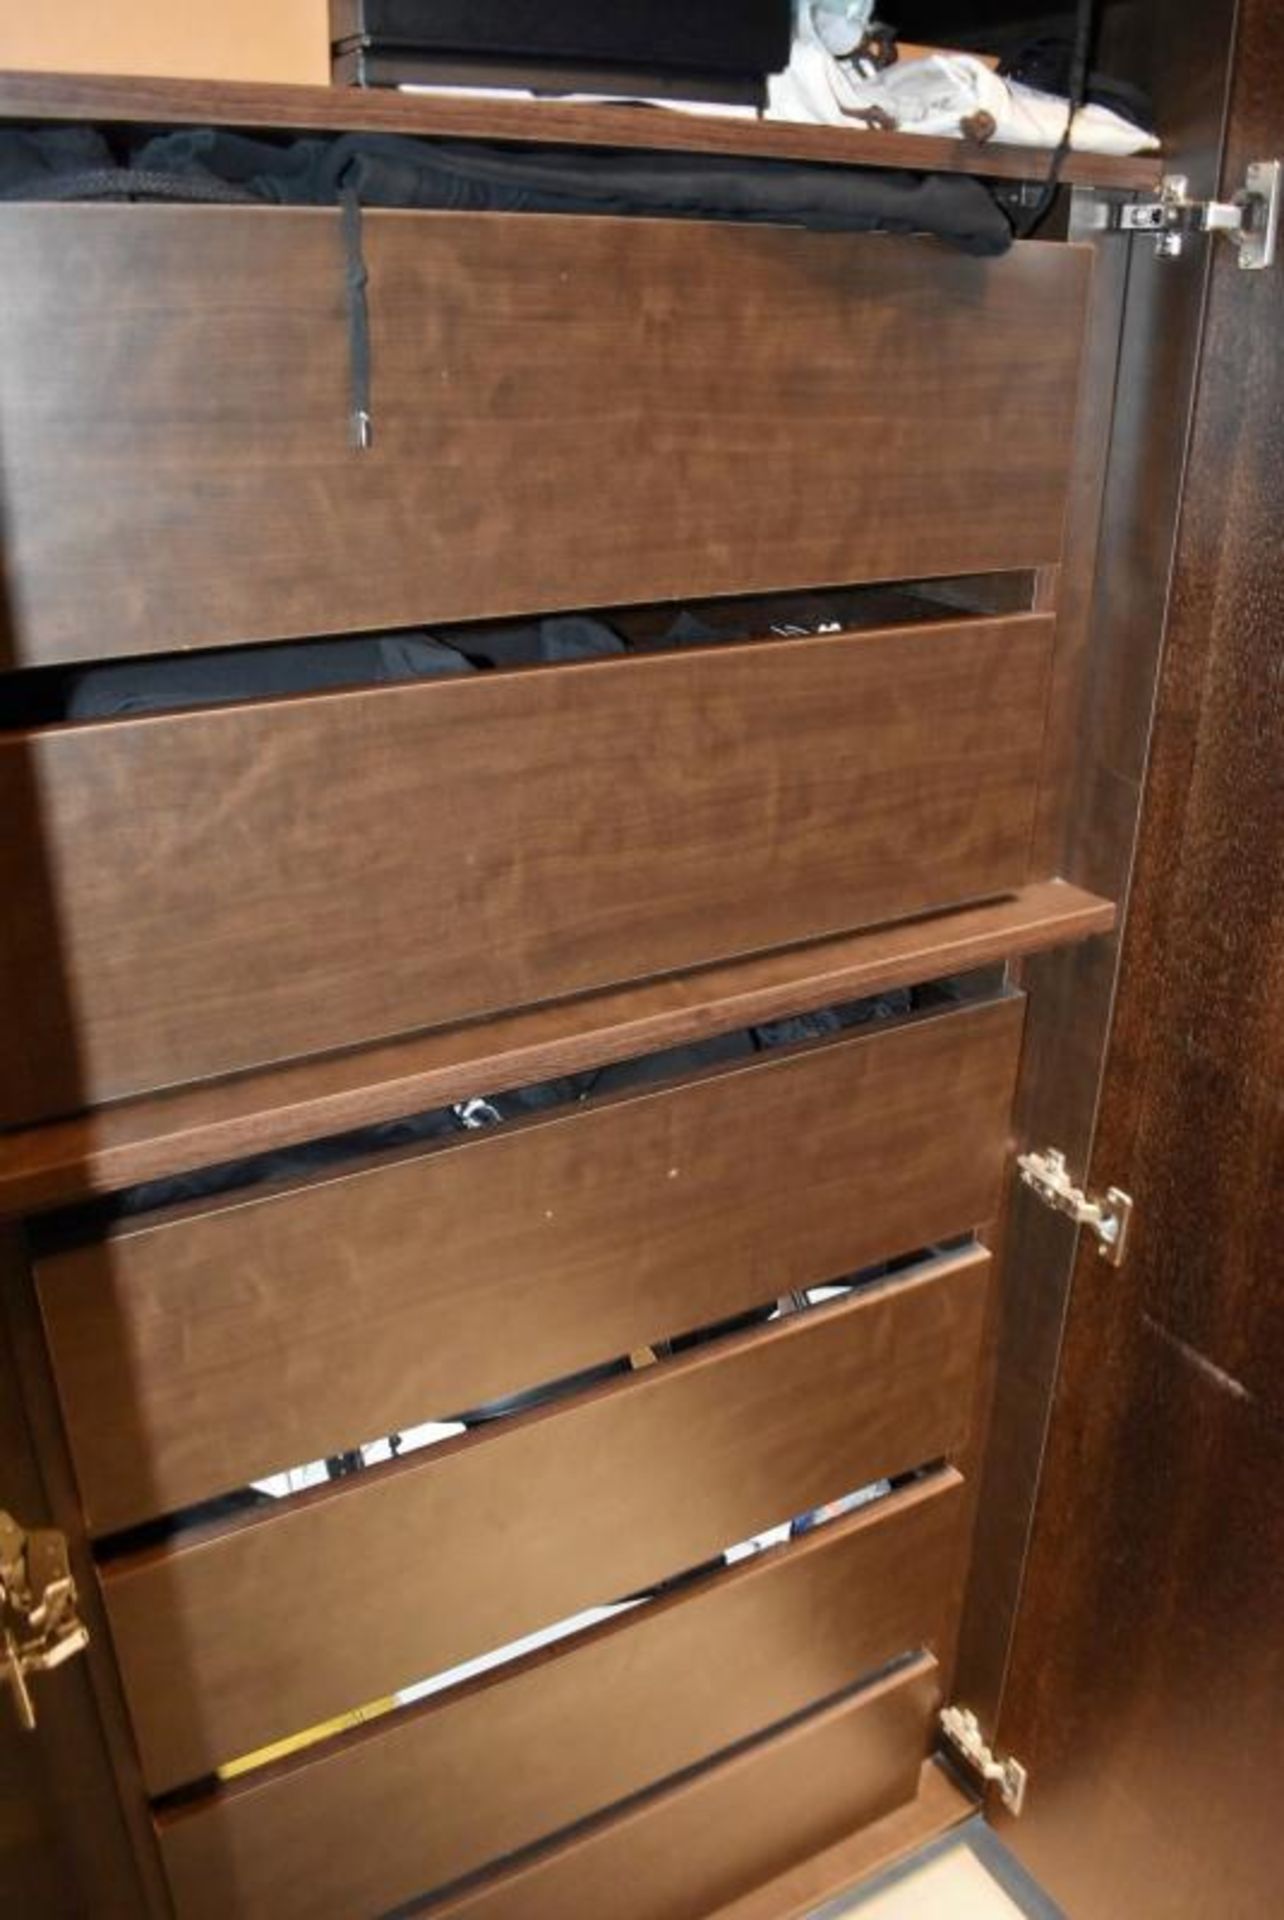 14-Door Walk-in Wardrobe Storage Installation With Dark Wood Veneer Doors - Compises Of 7 x Double D - Image 10 of 12